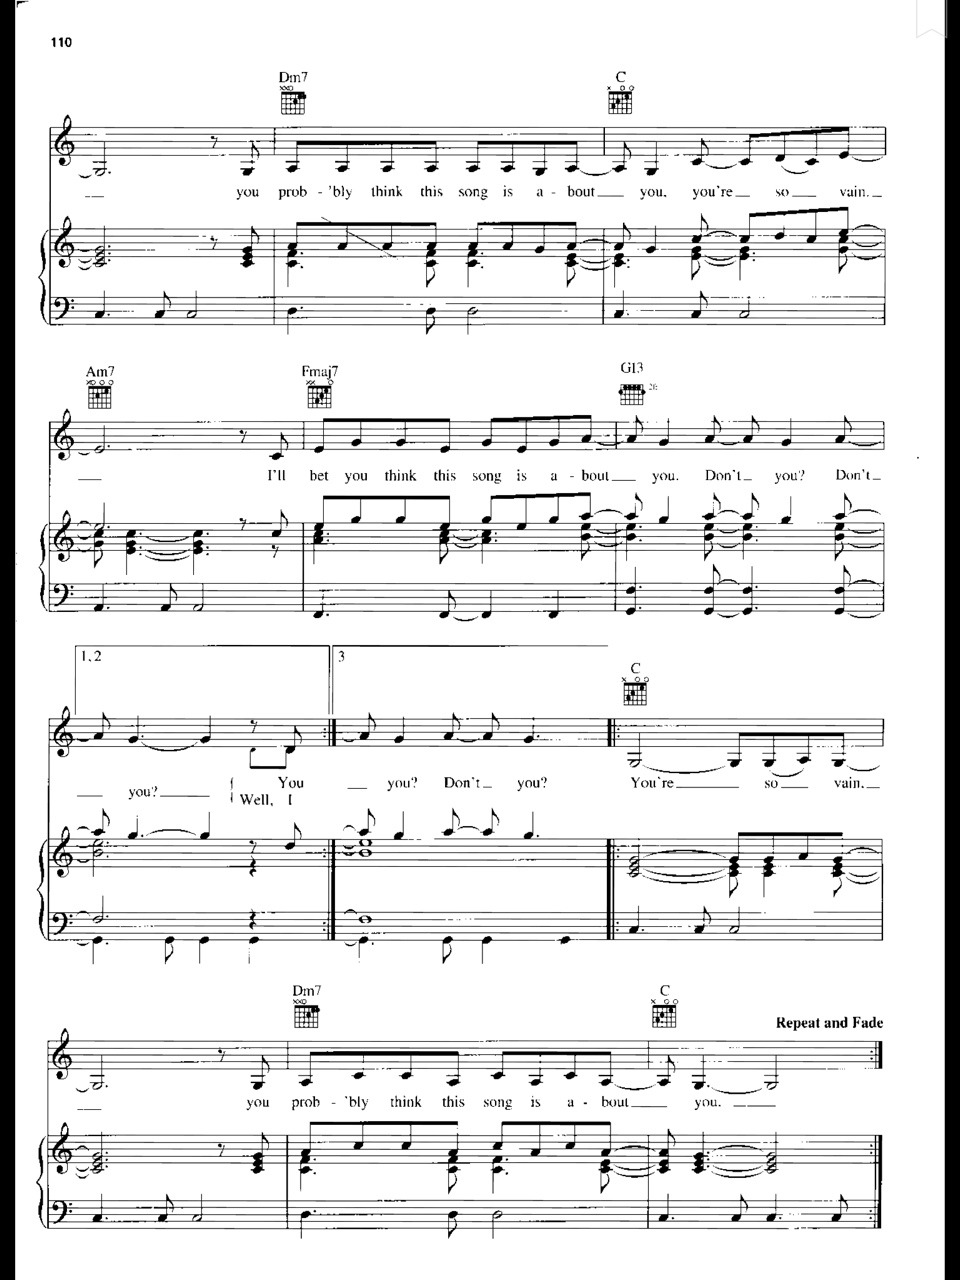 Piano Sheet Music — Carly Simon - You’re So Vain (Piano Sheet)